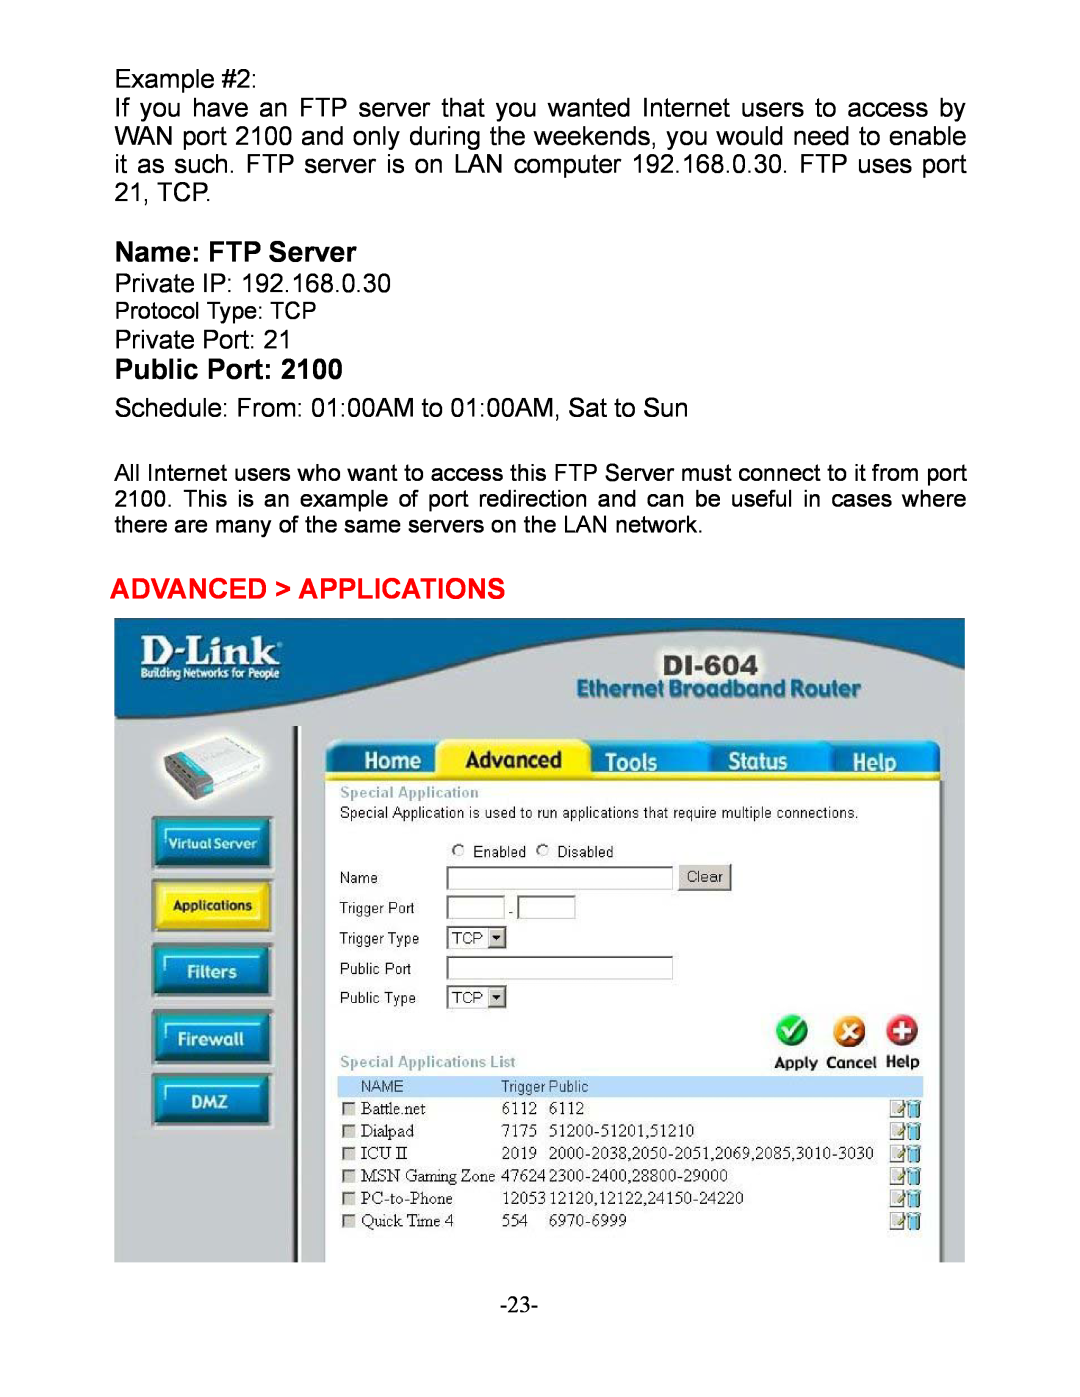 D-Link DI-604 manual Name FTP Server, Advanced Applications, Public Port 